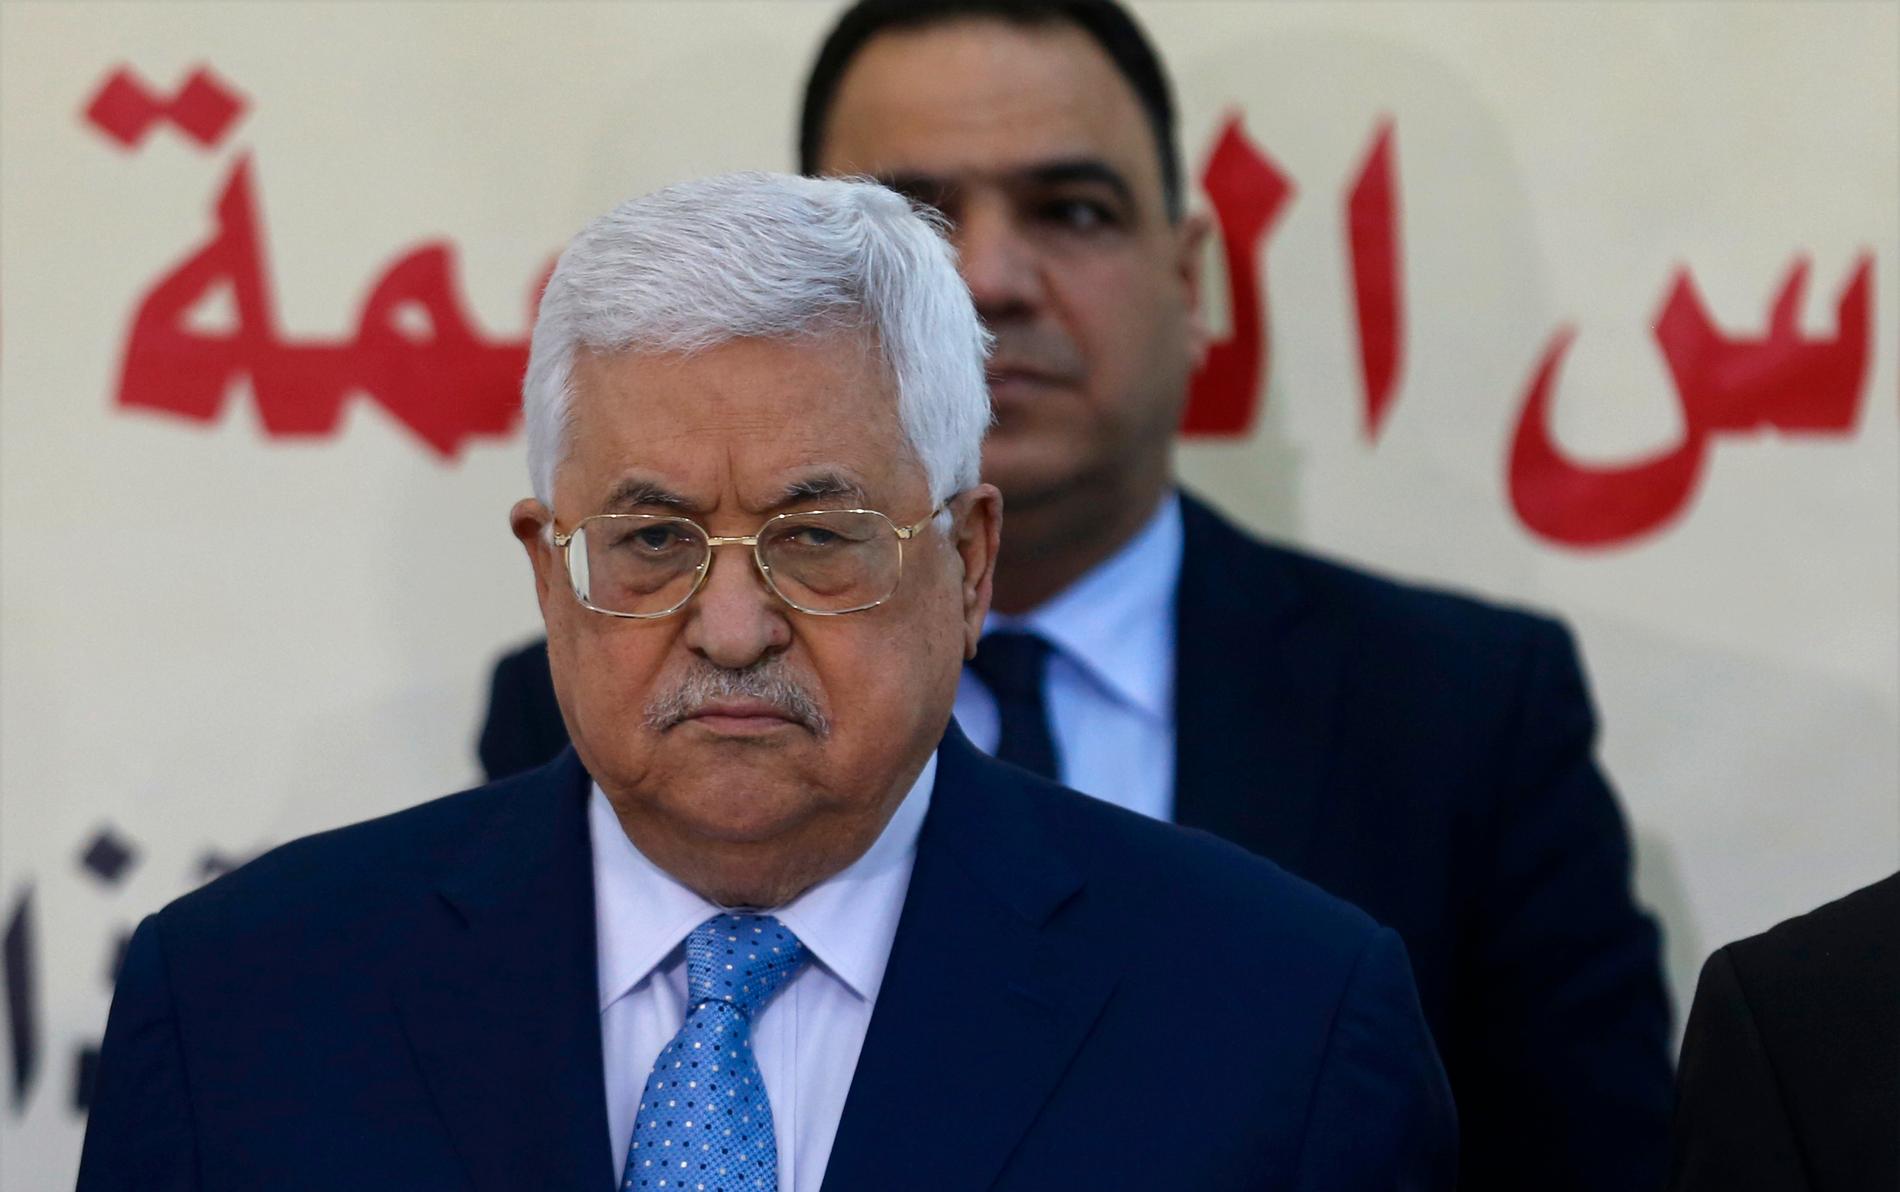 Palestiniernas ledare Mahmud Abbas kritiseras efter kommentarer om Förintelsen. Arkivbild.